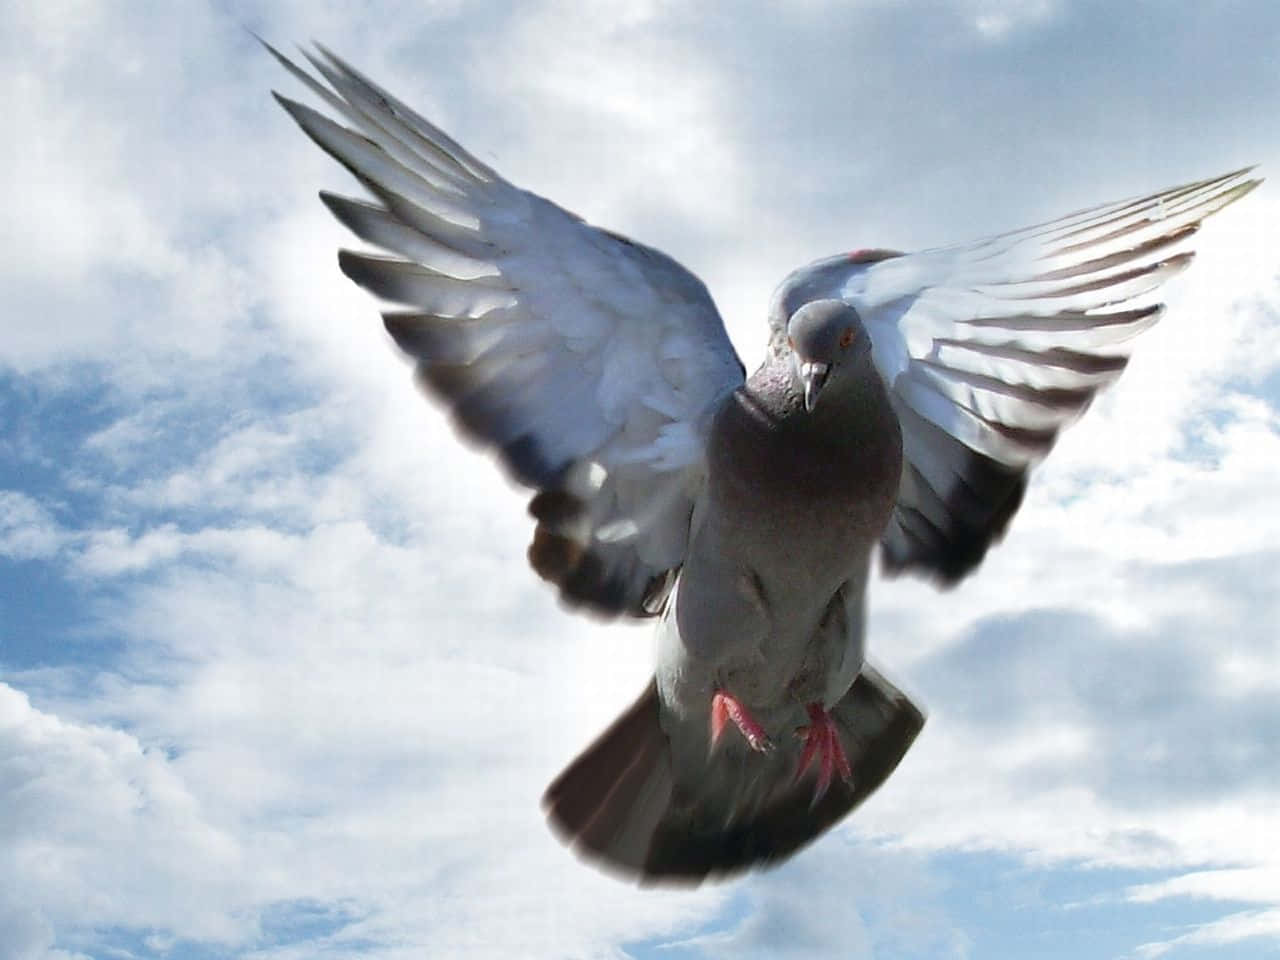 Watching a Pigeon Take Flight